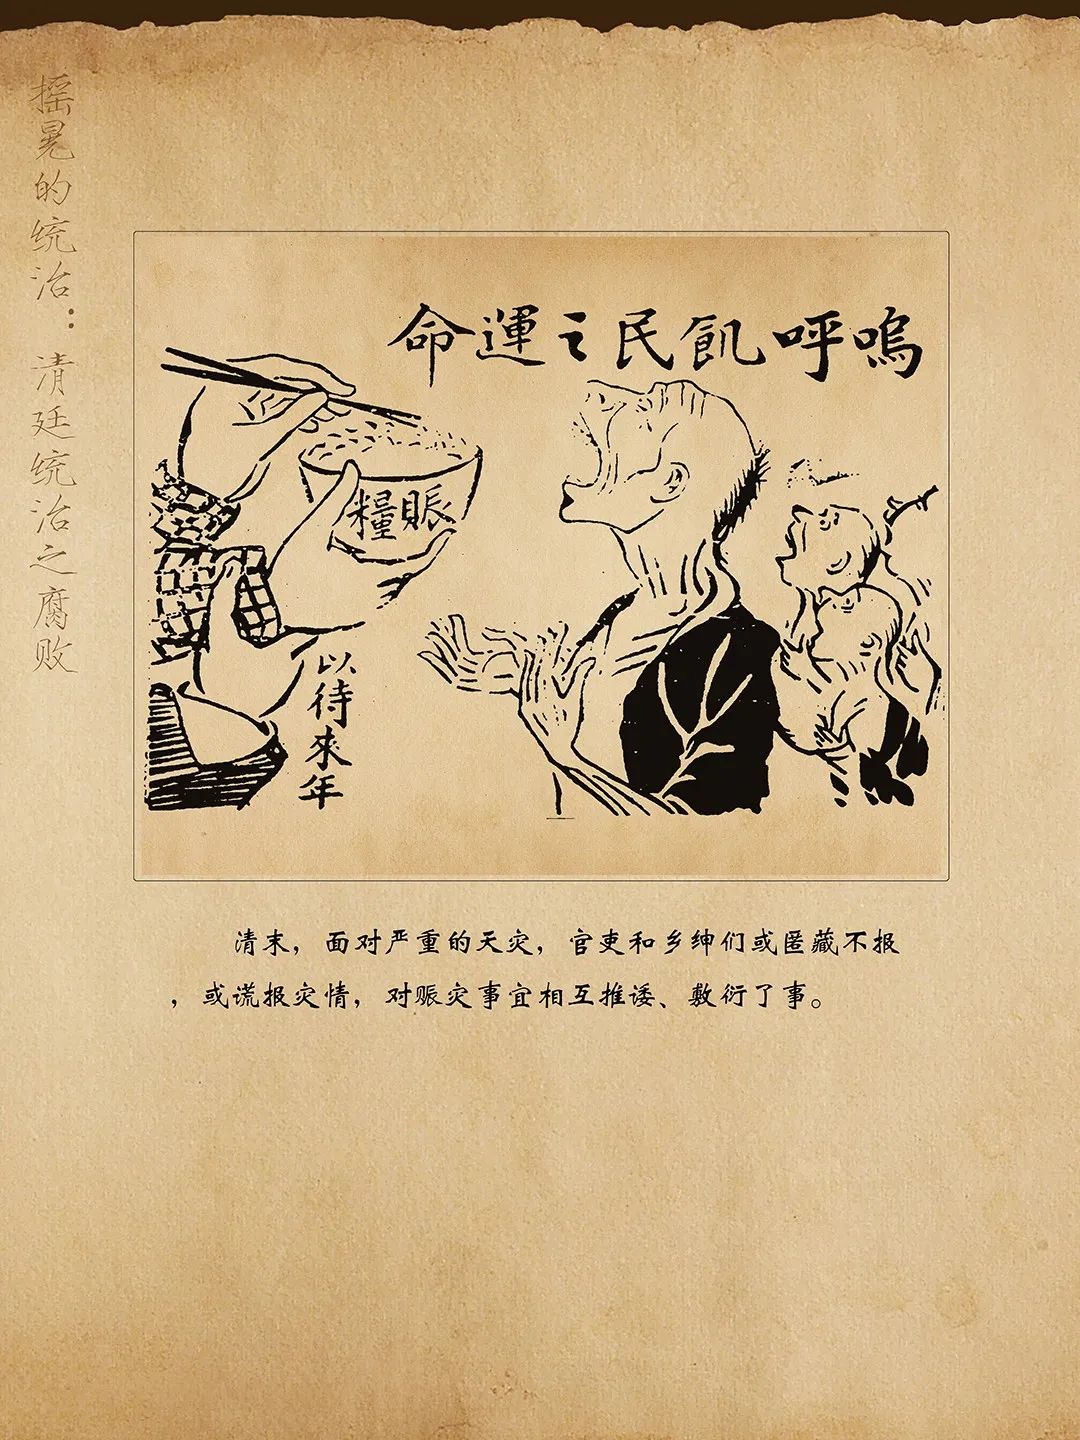 线上展览:历史的放大镜——辛亥革命时期漫画展(四)